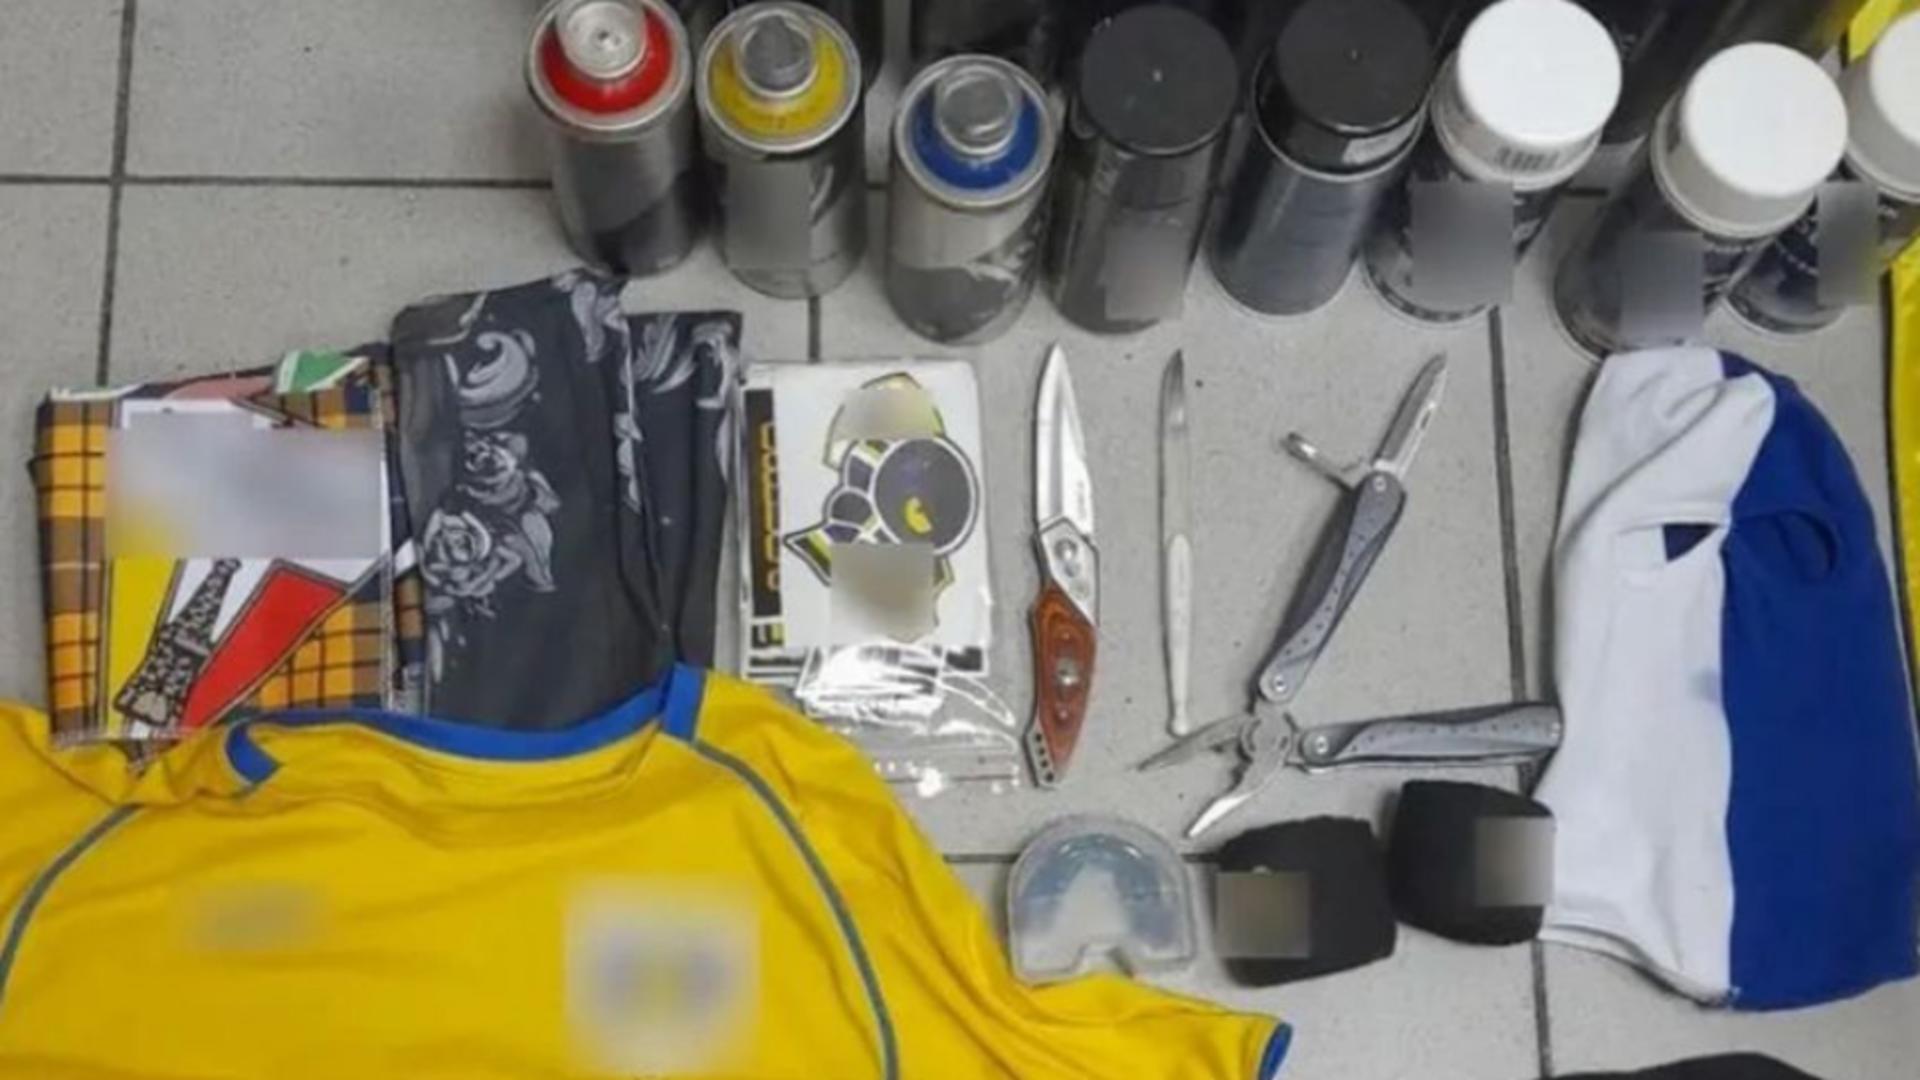 Controlorii au găsit asupra lor mai multe cuțite, un briceag și peste 20 de spray-uri cu vopsea. Foto/GSP